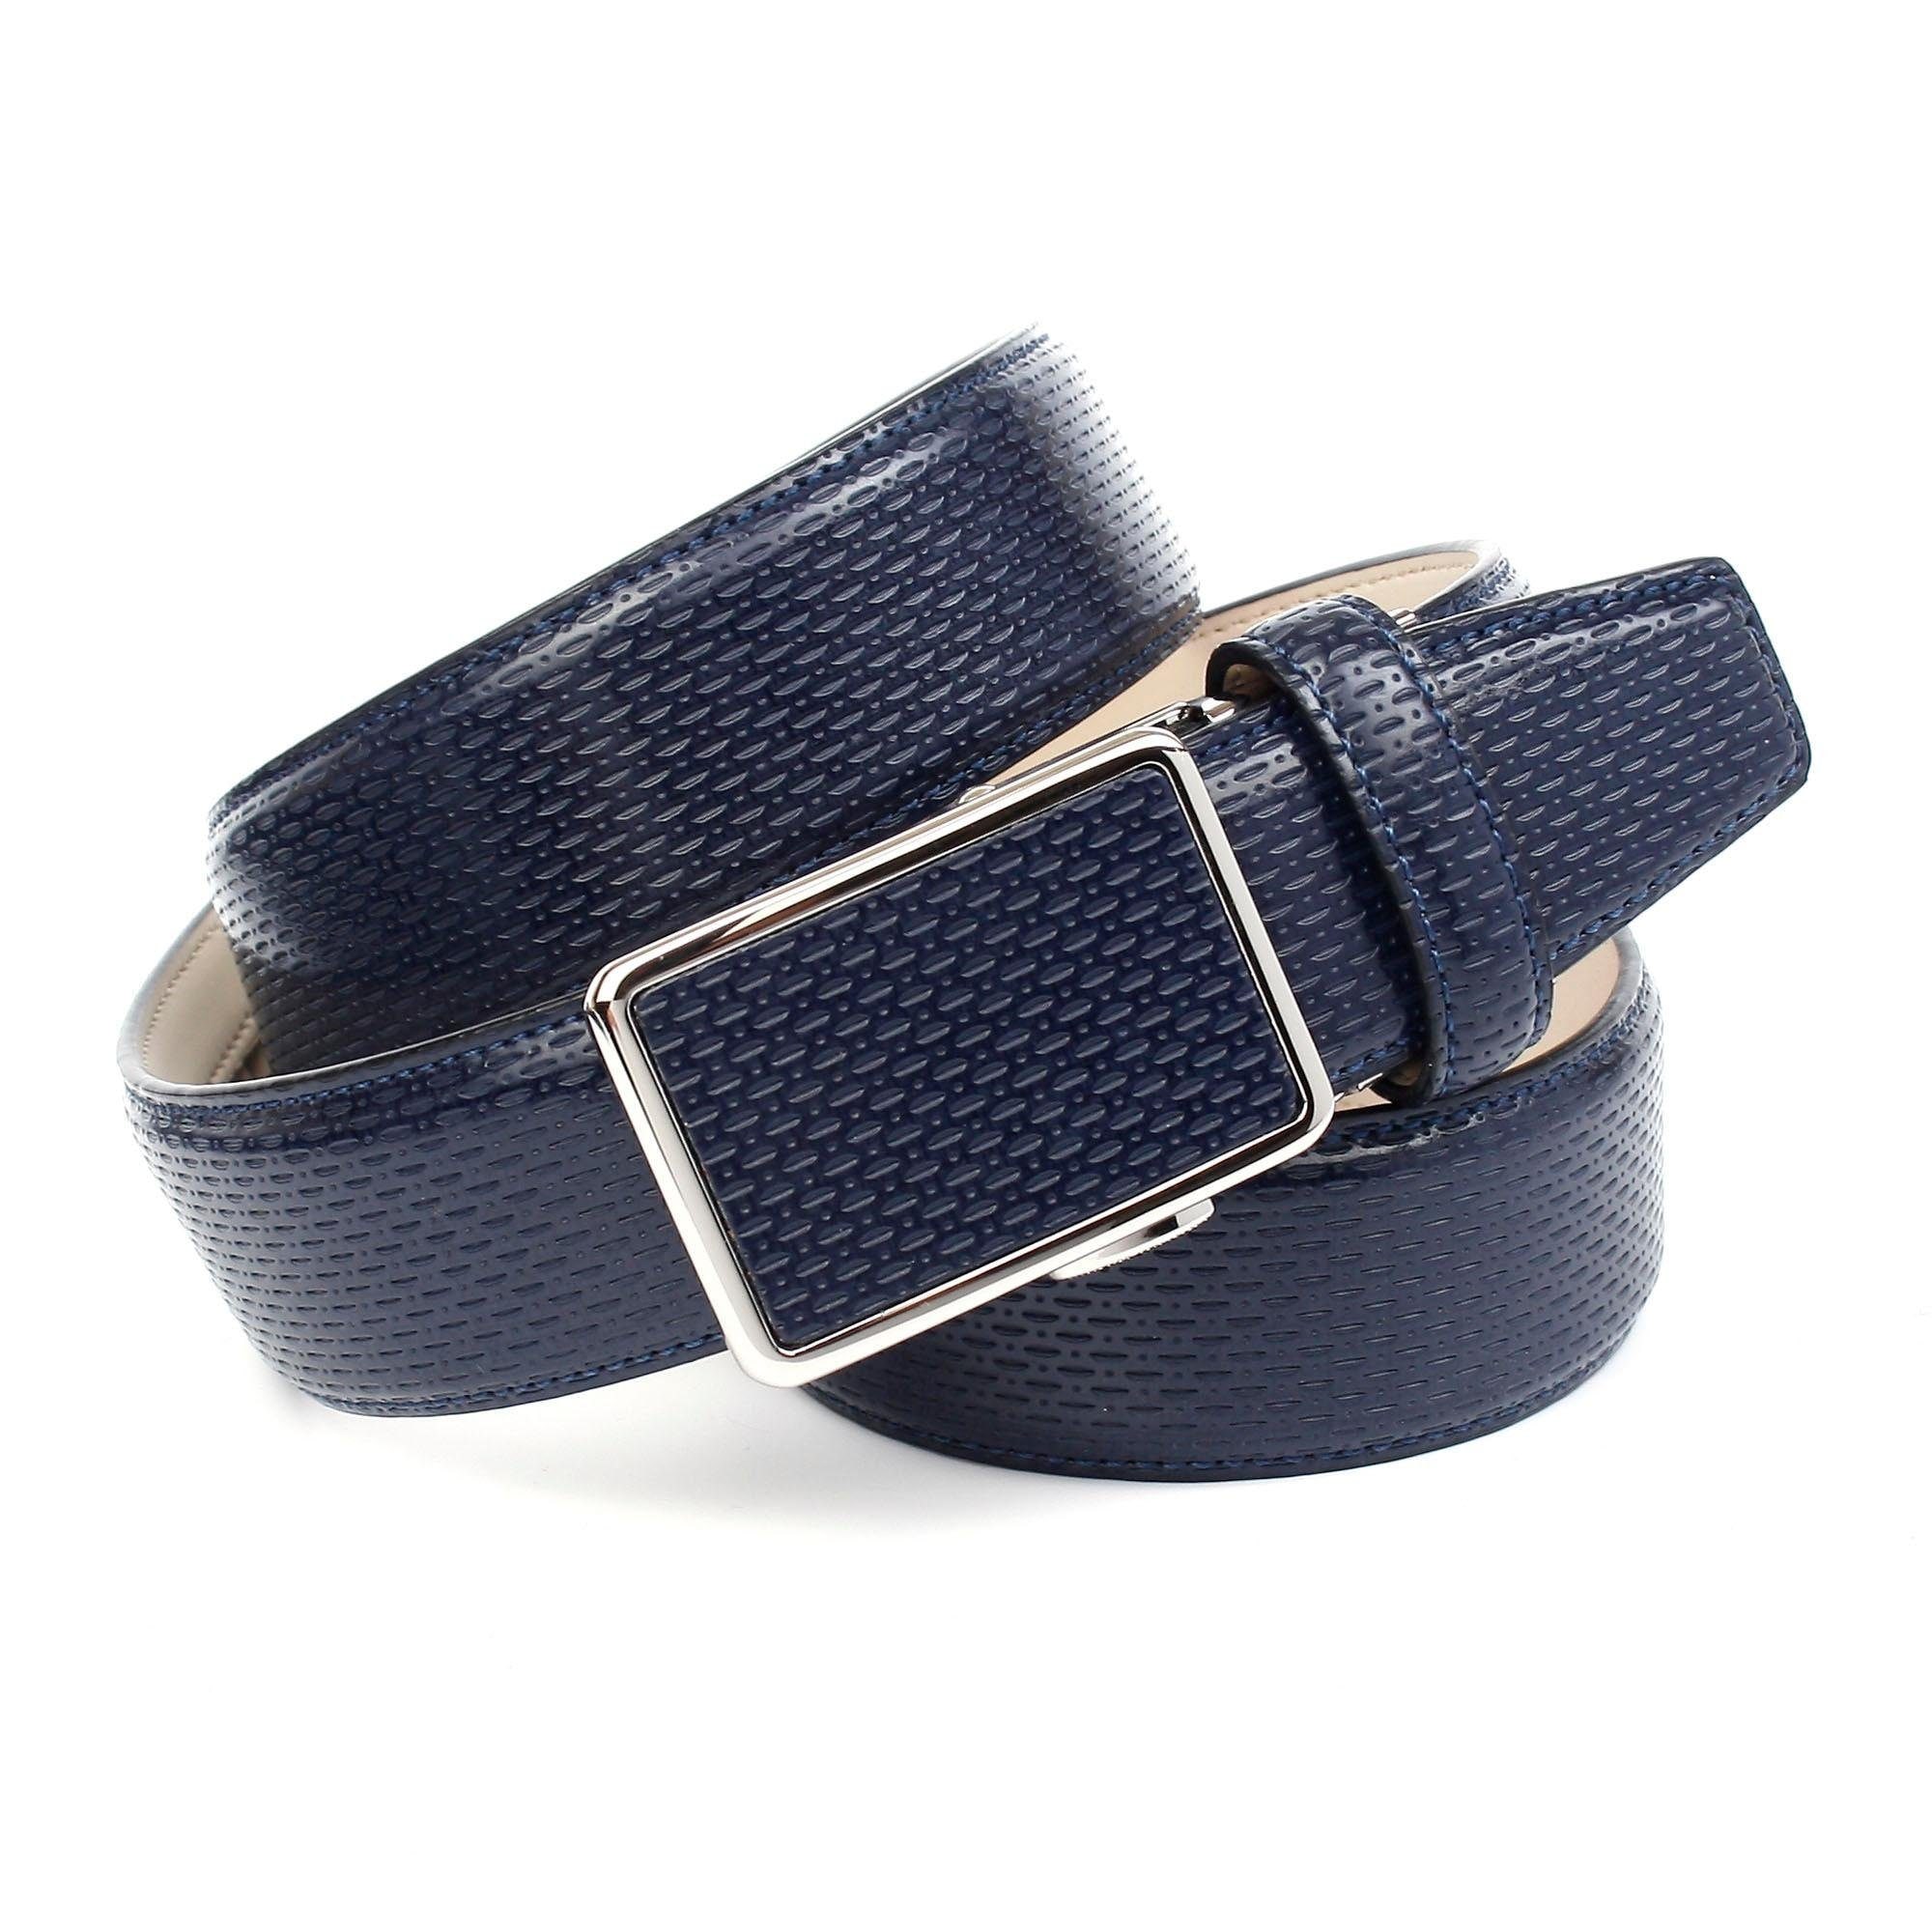 Anthoni Crown Ledergürtel, für blaue Schuhe mit perforiertem Leder